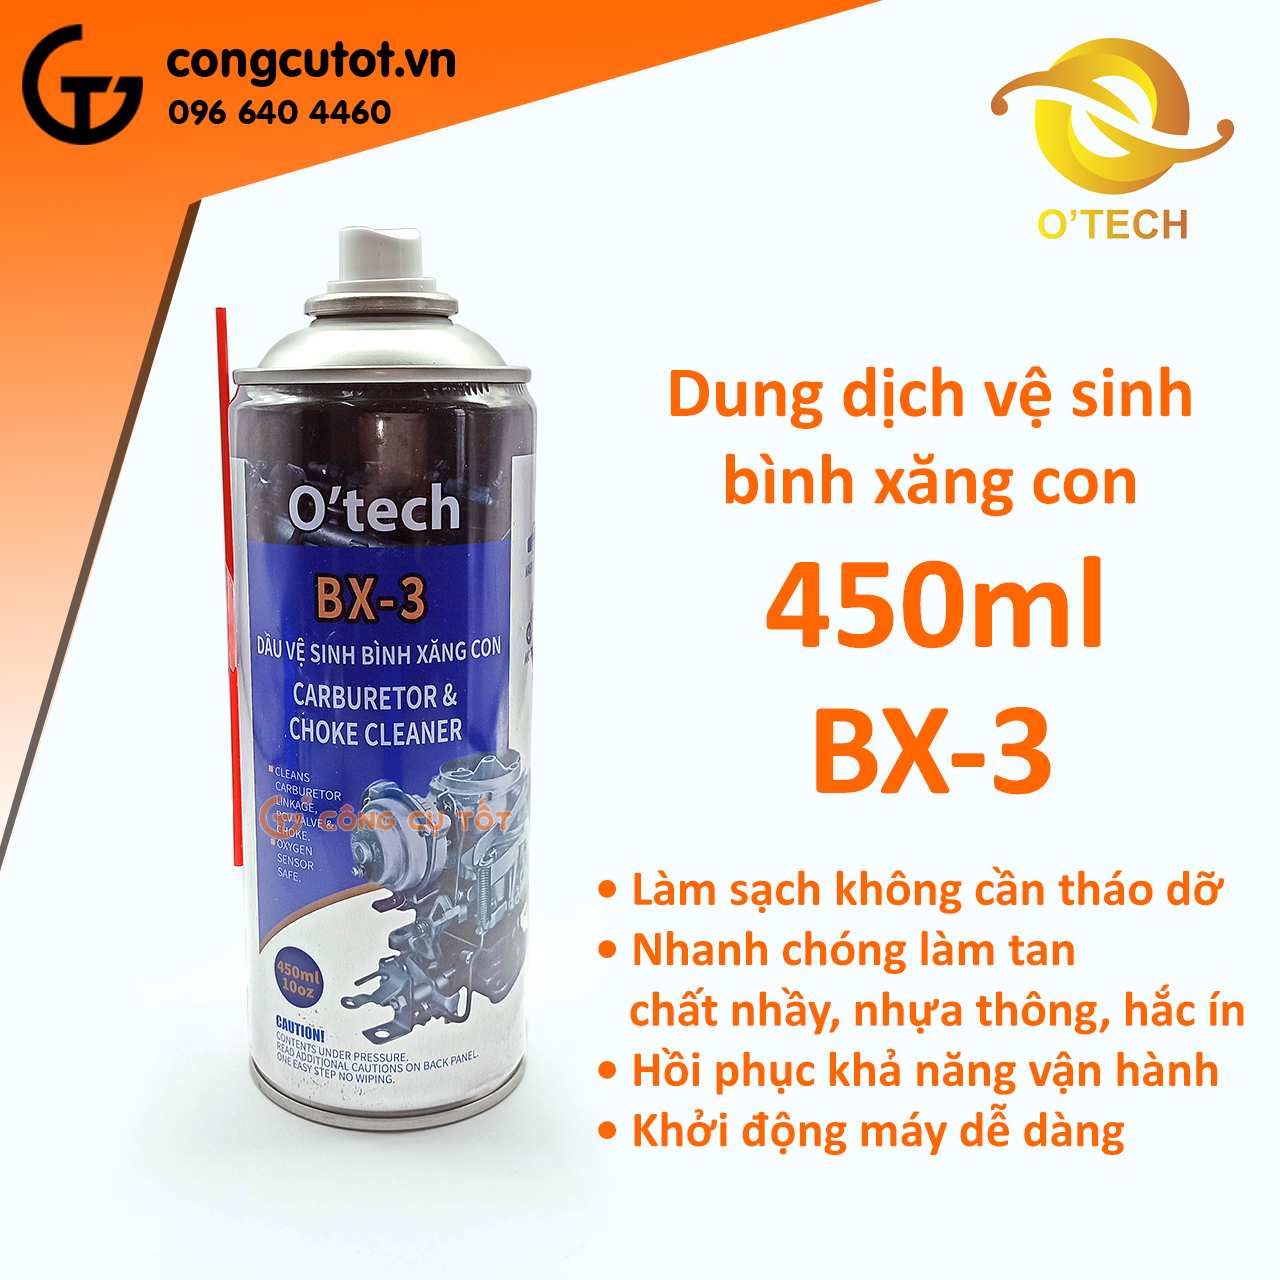 Bình xịt vệ sinh bình xăng con 450ml OTECH BX-3